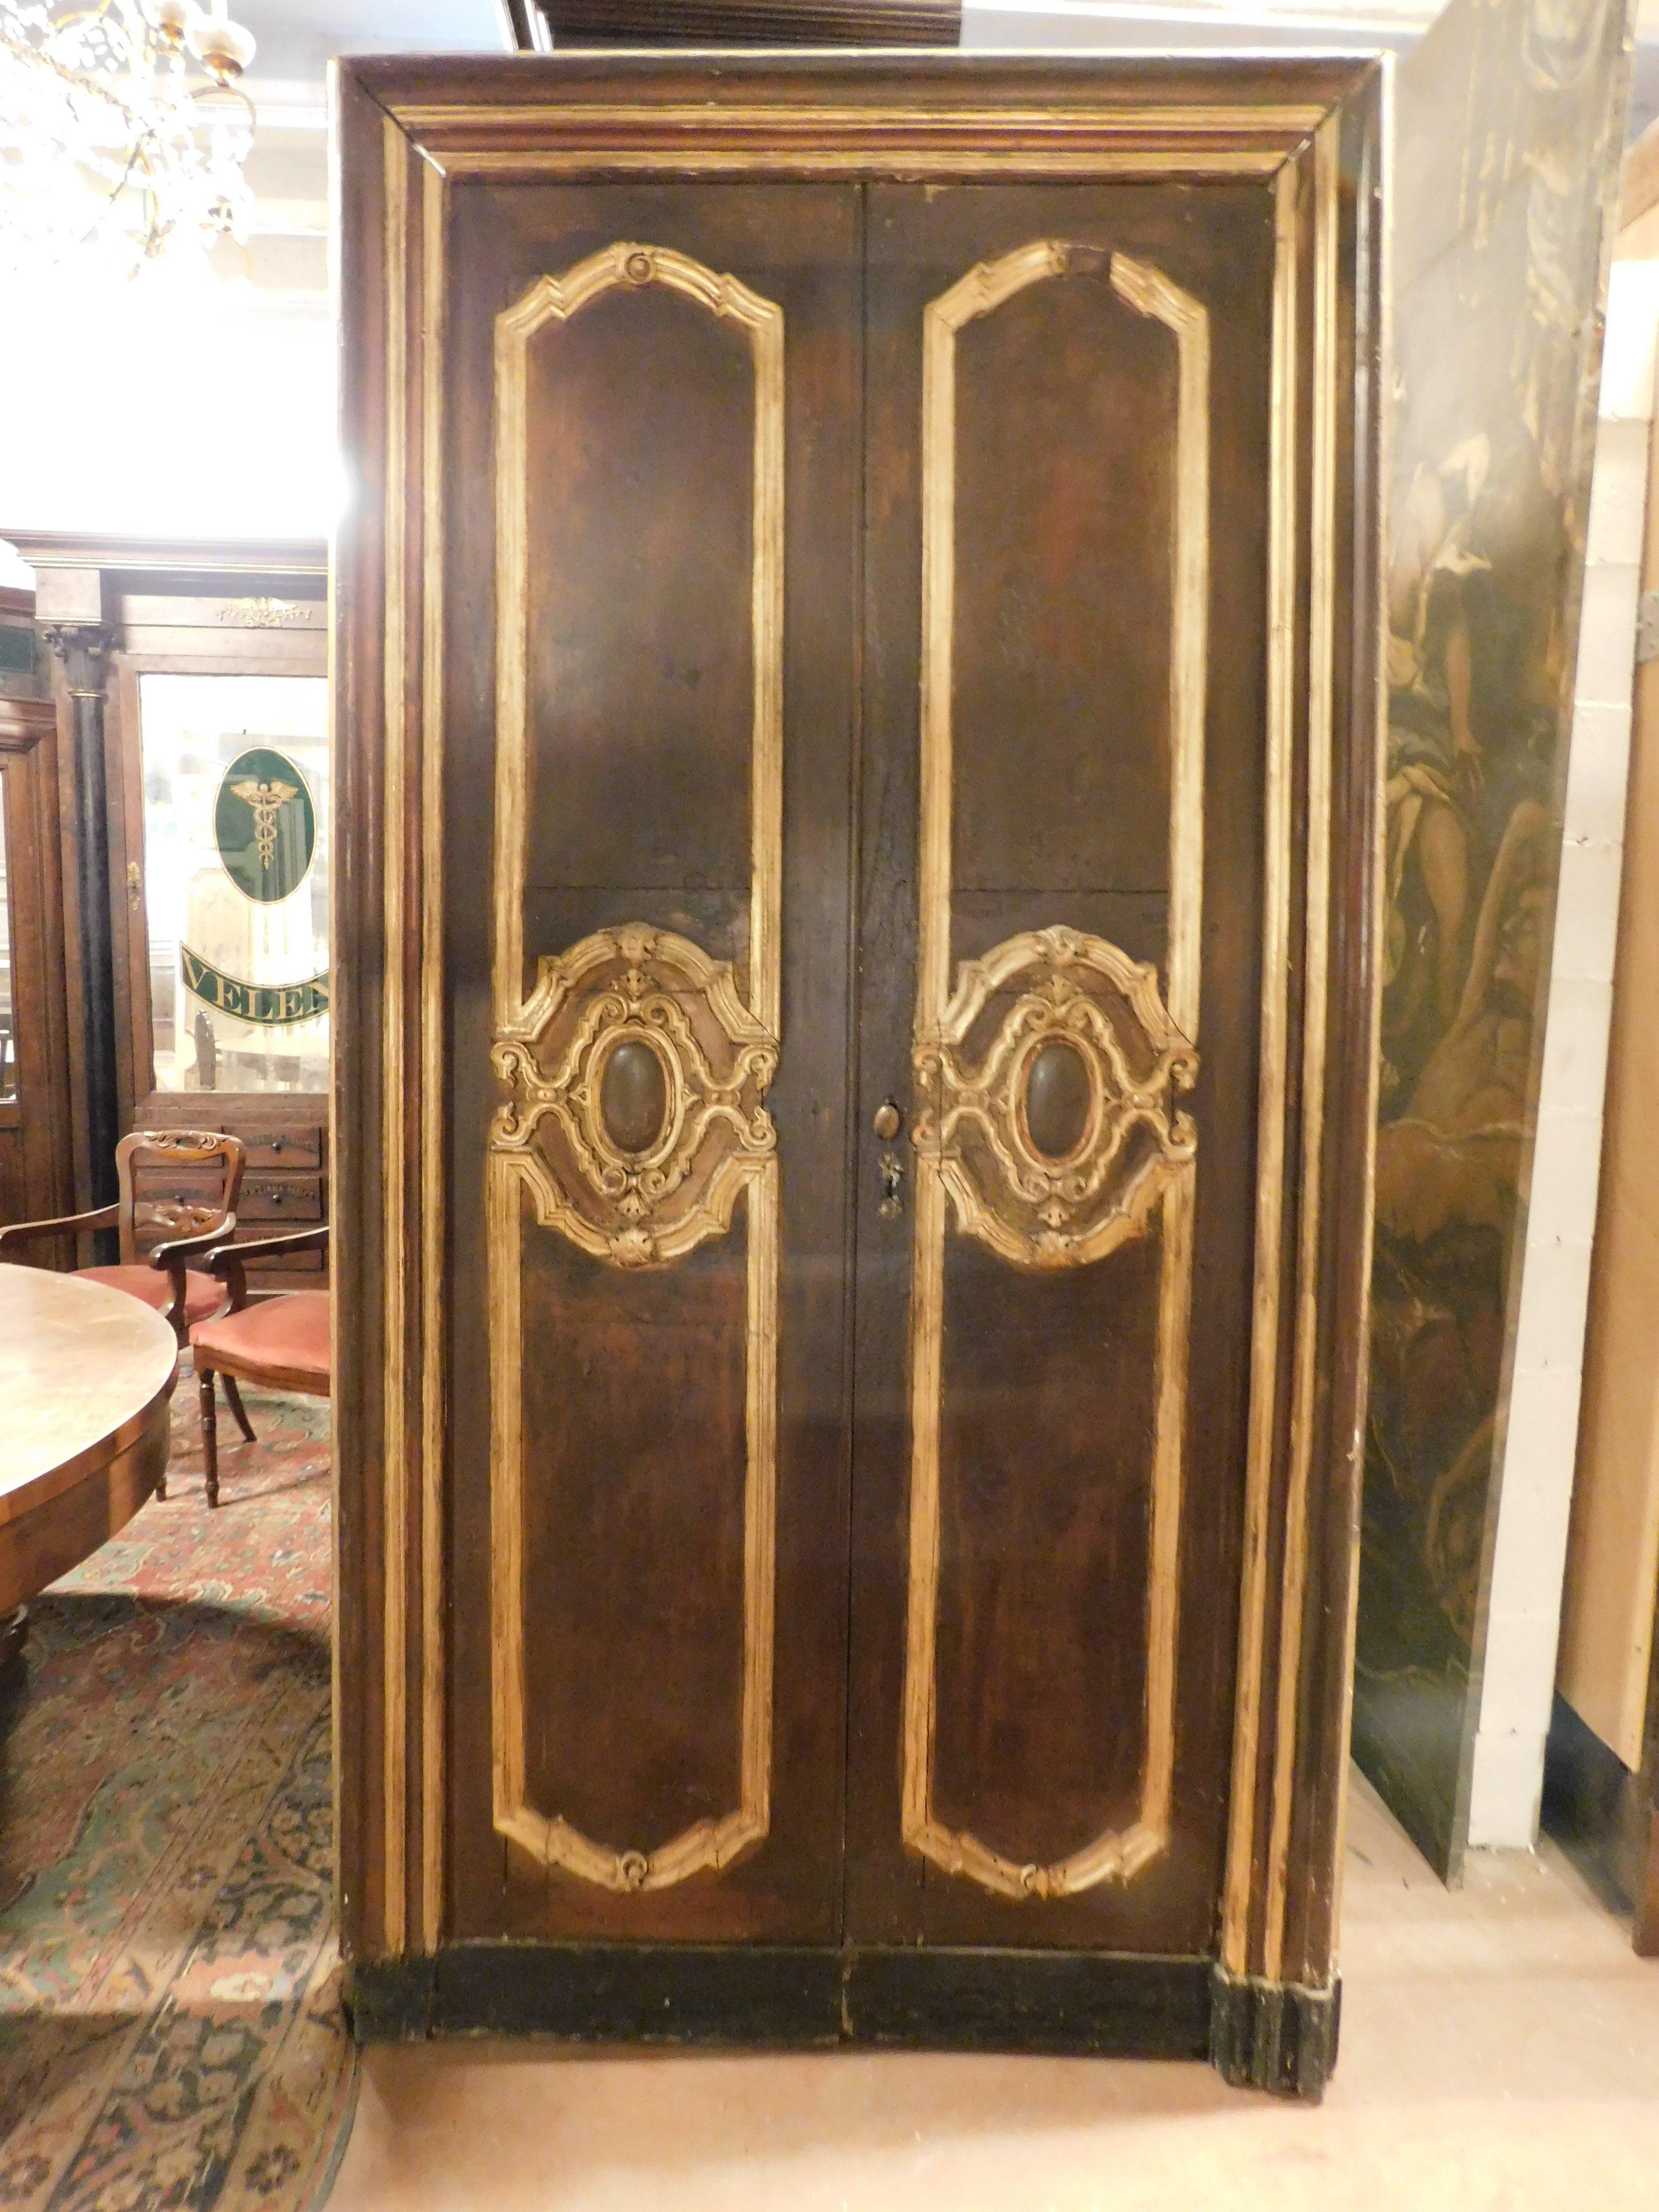 Ensemble de 2 portes intérieures à double battant, avec cadres originaux et dorés, laquées à la main dans des couleurs brunes et dorées, construites en Italie à la fin du XVIIIe siècle.
Dos sculpté mais peut-être à finir avec une autre couleur,